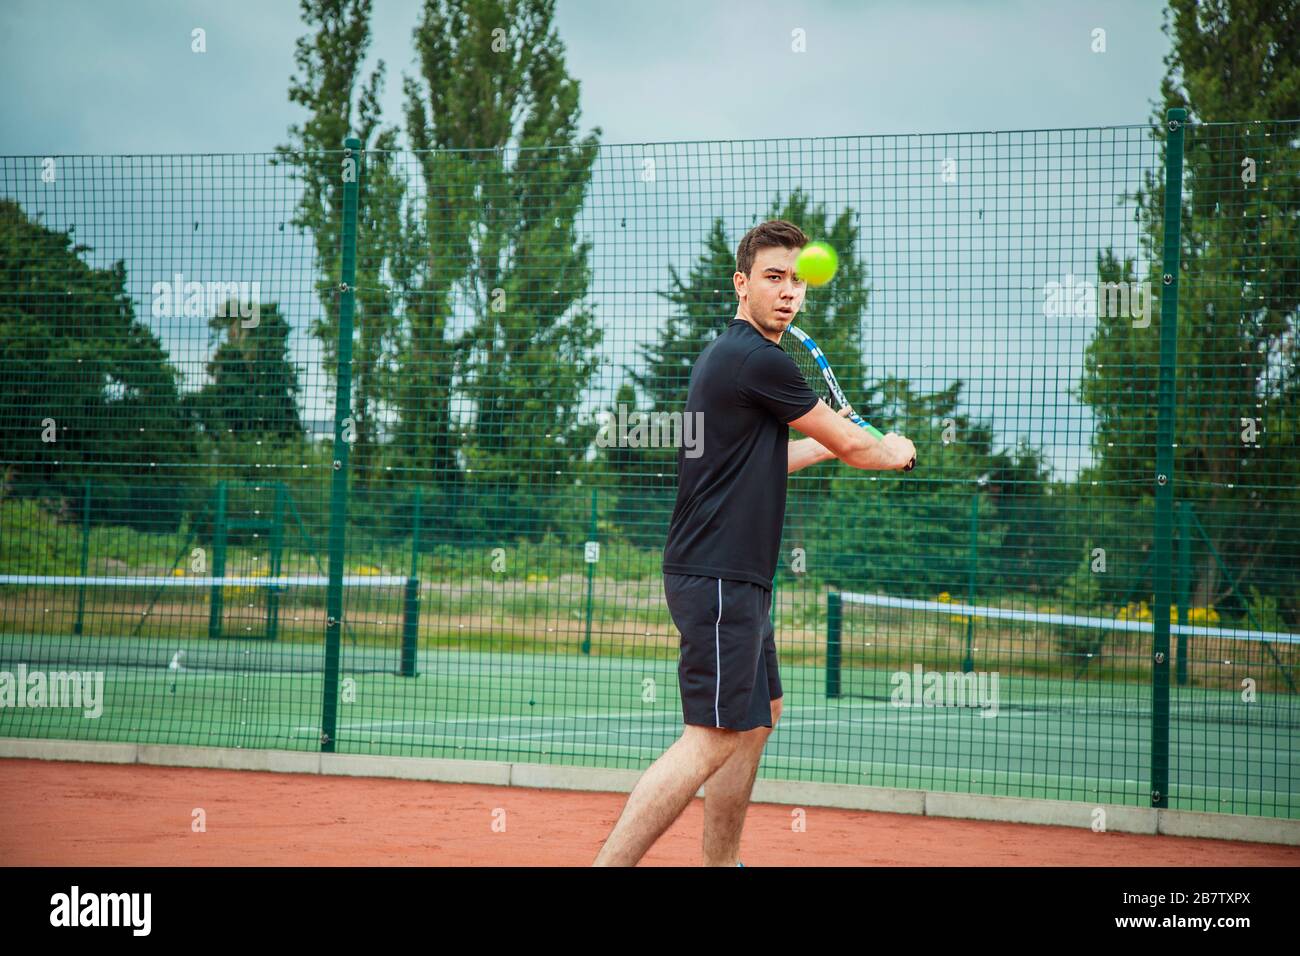 Hombre jugando al tenis Foto de stock